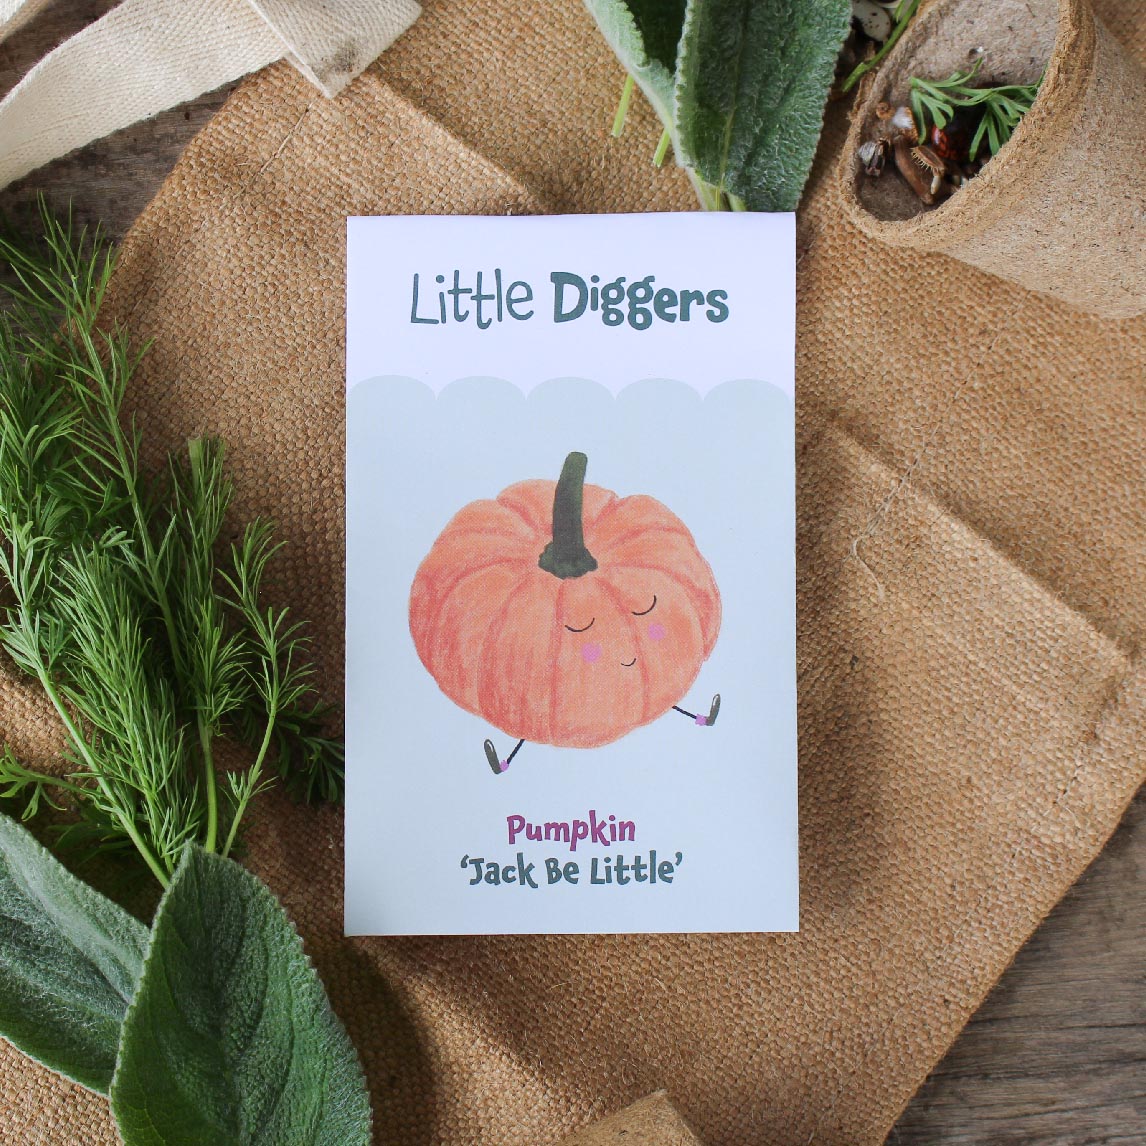 Little Diggers Pumpkin 'Jack Be Little'